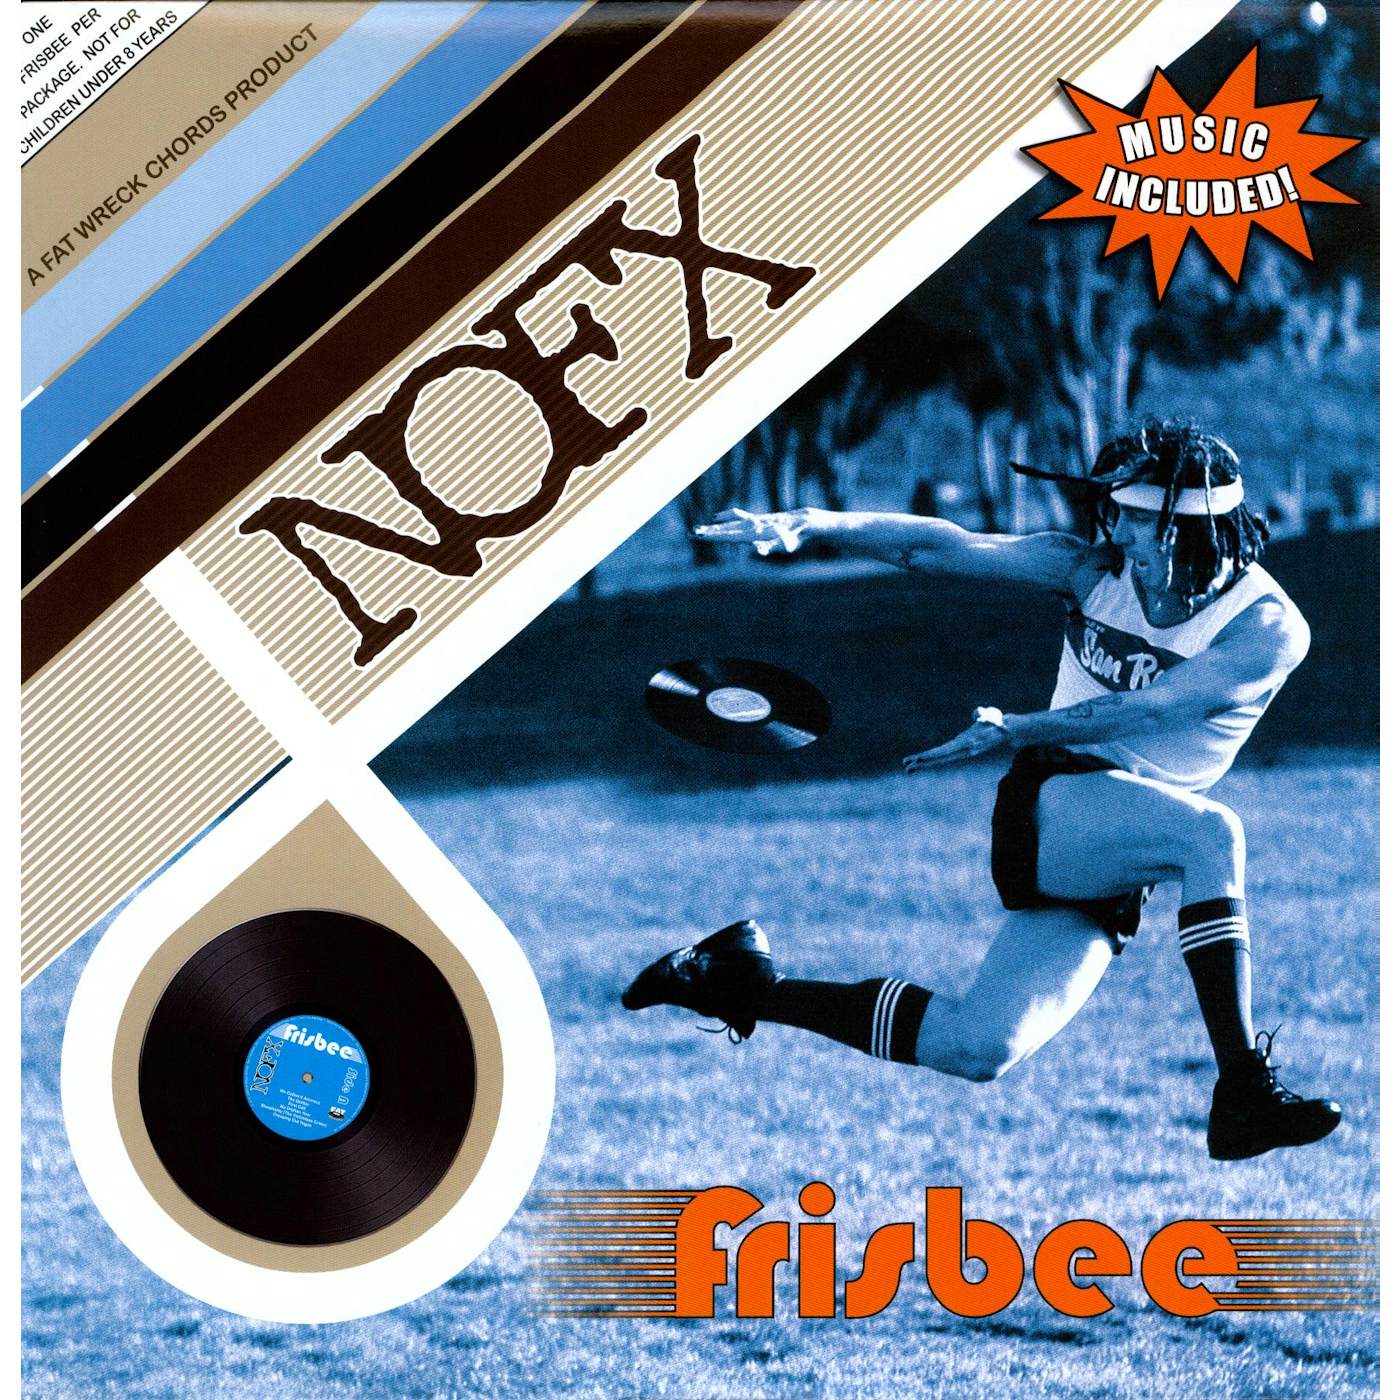 NOFX FRISBEE Vinyl Record